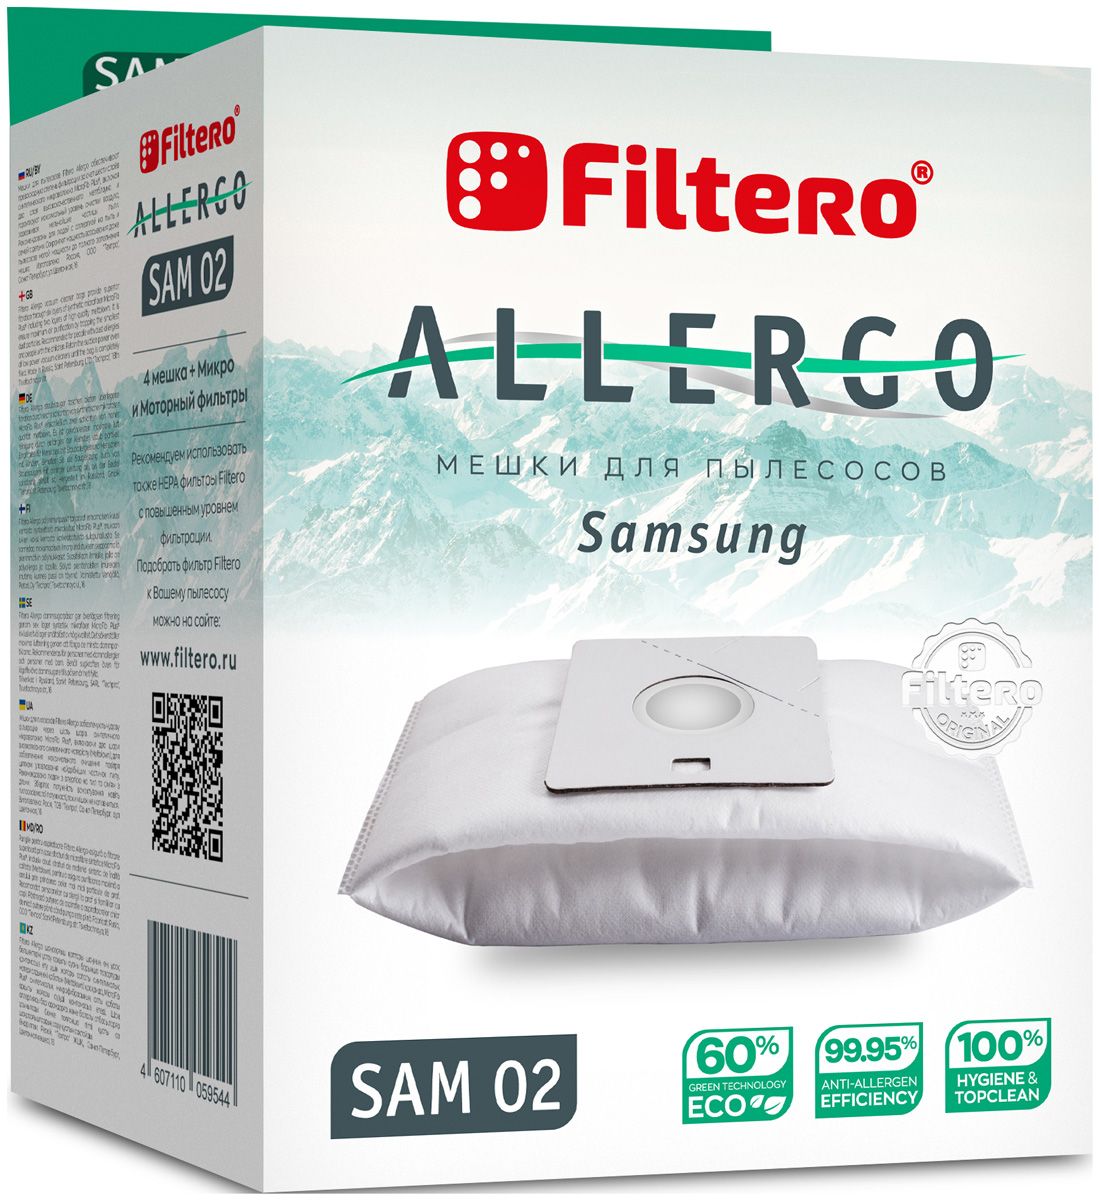 Пылесборники Filtero SAM 02 Allergo 4 шт. + моторный фильтр и микрофильтр пылесборники filtero mie 02 allergo 4 шт моторный фильтр и микрофильтр